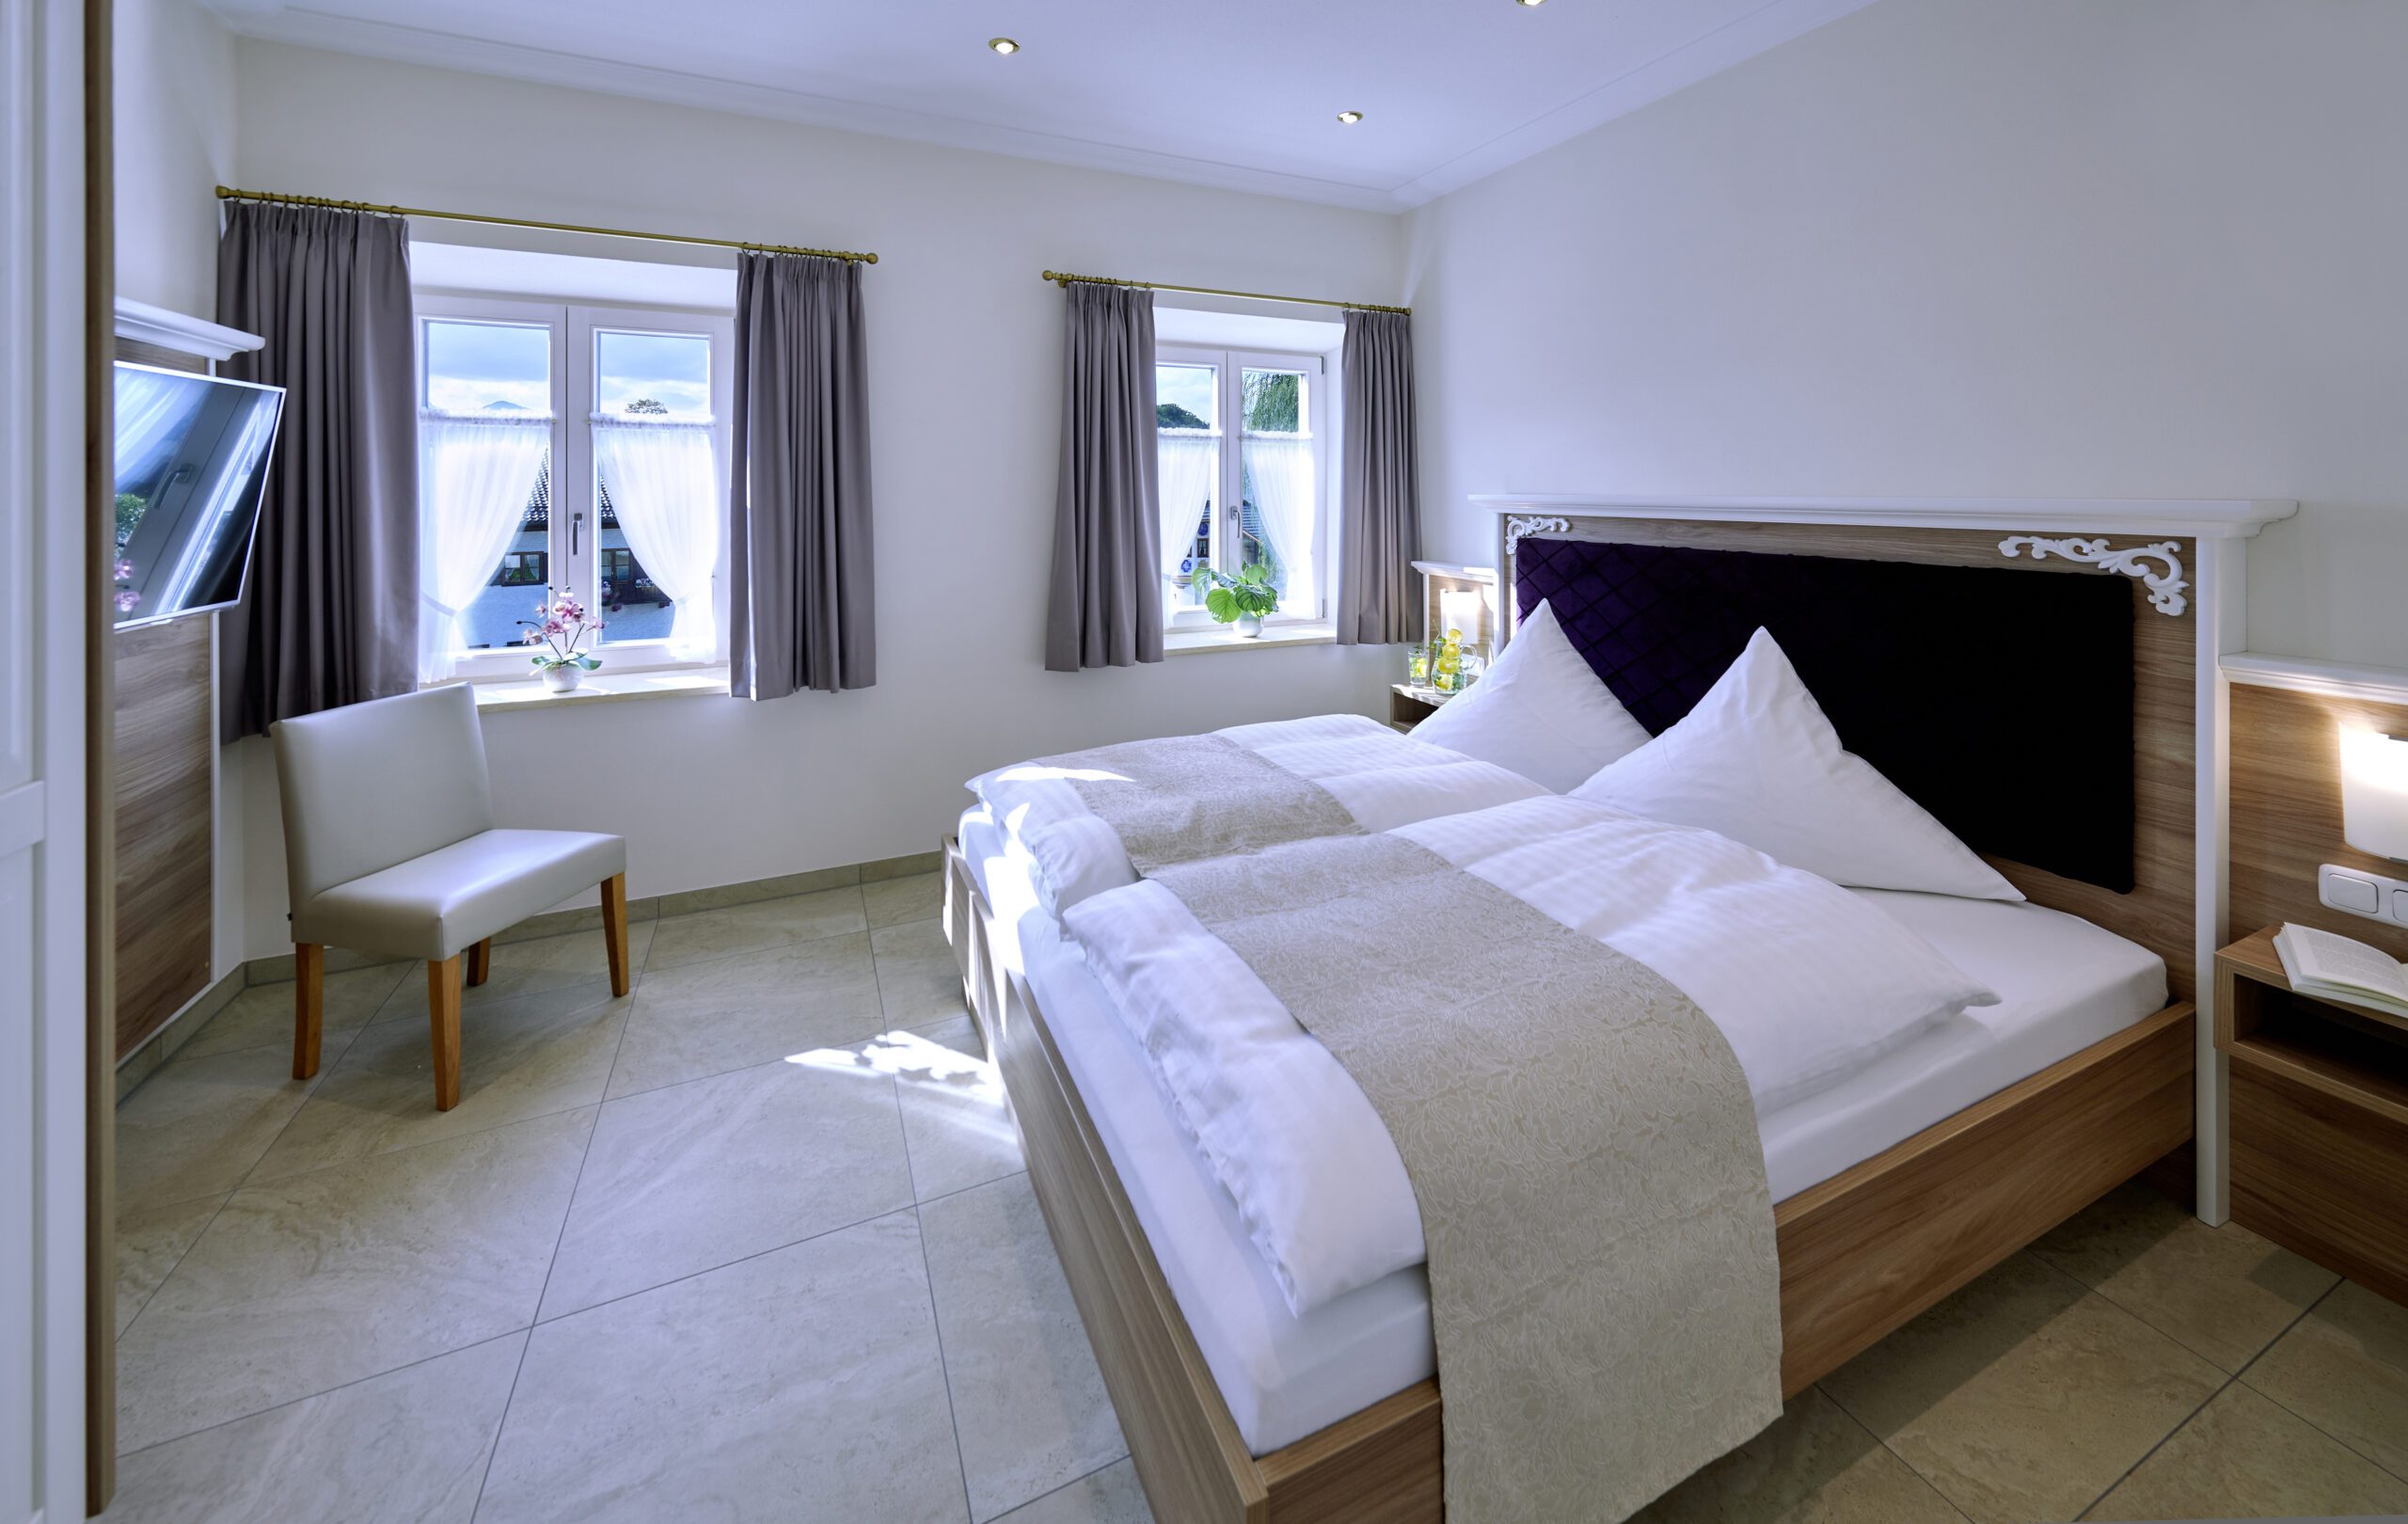 schlafzimmer mit hellbraunem doppelbett, am kopfteil ist der mittlere bereich mit lila samt verkleidet und die ecken mit weissen ornamenten verziert